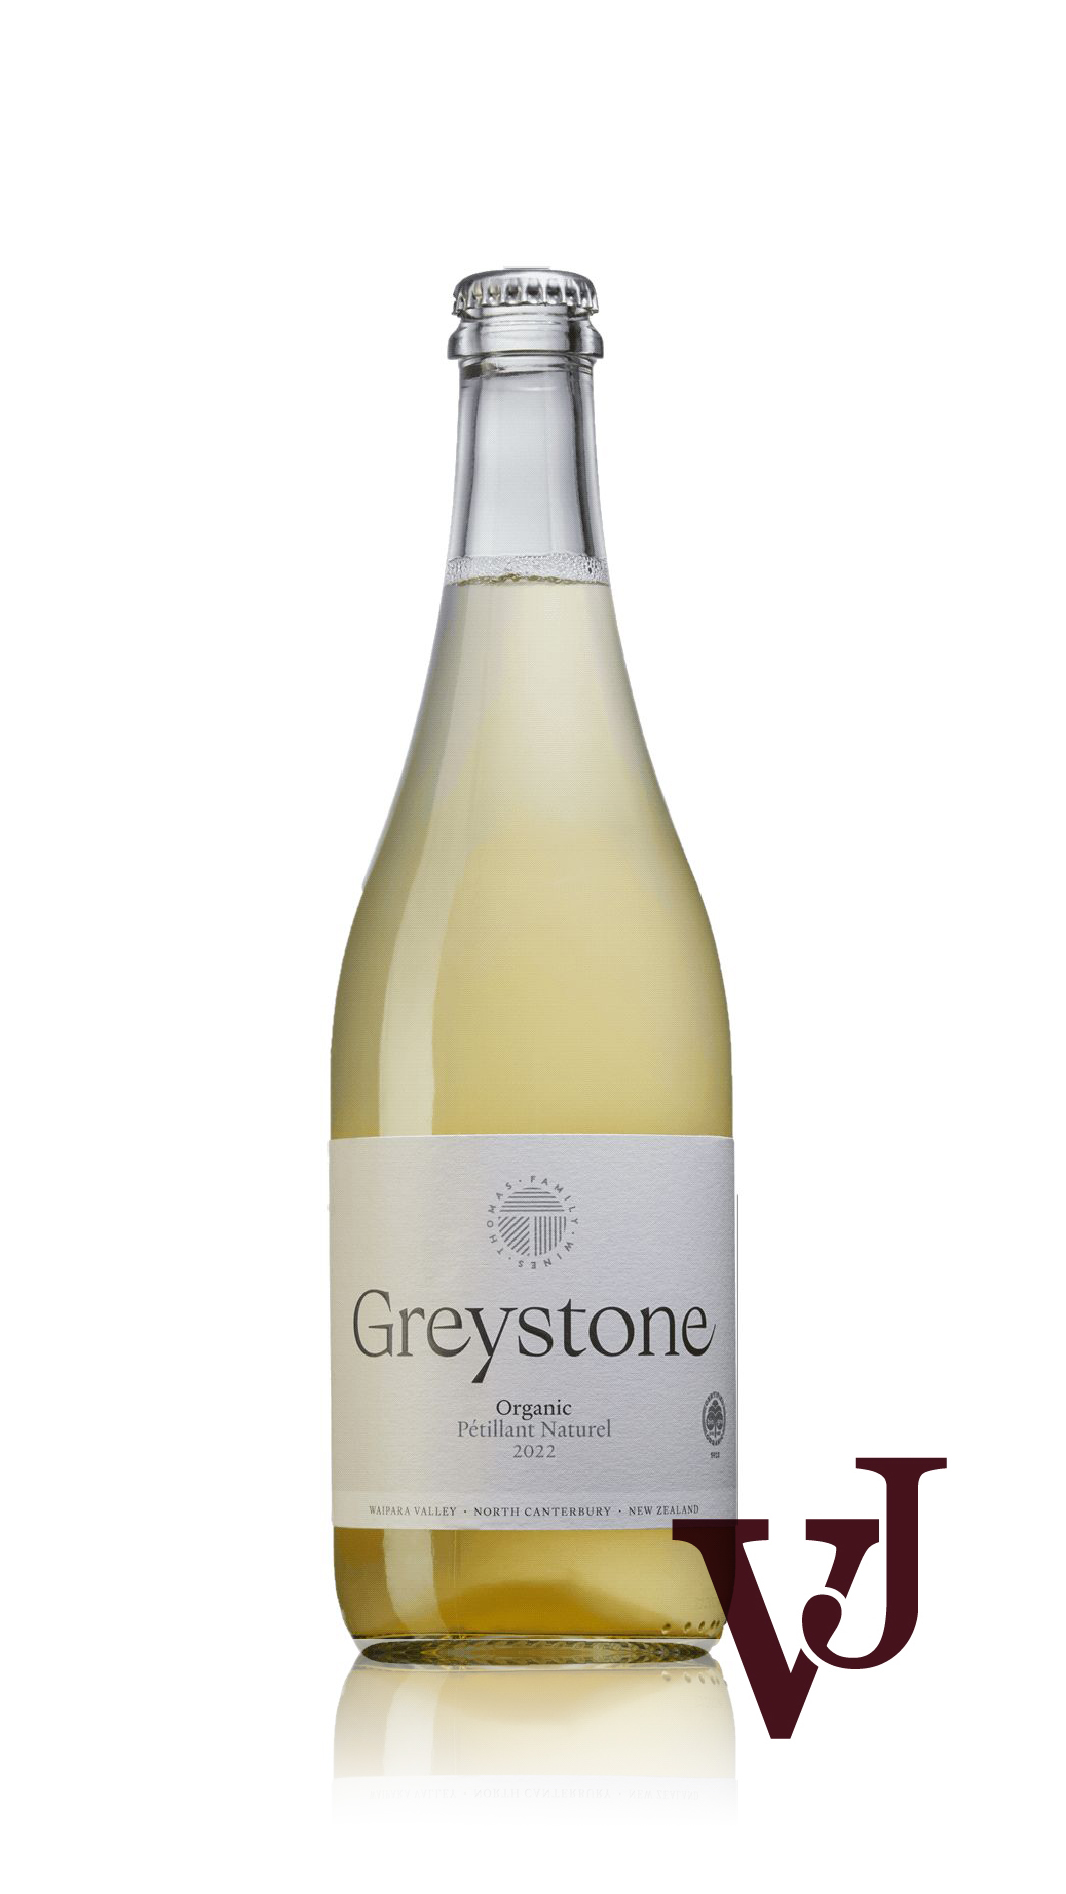 Mousserande Vin - Greystone Petillant Naturel 2022 artikel nummer 9229801 från producenten Greystone Wines från området Nya Zeeland